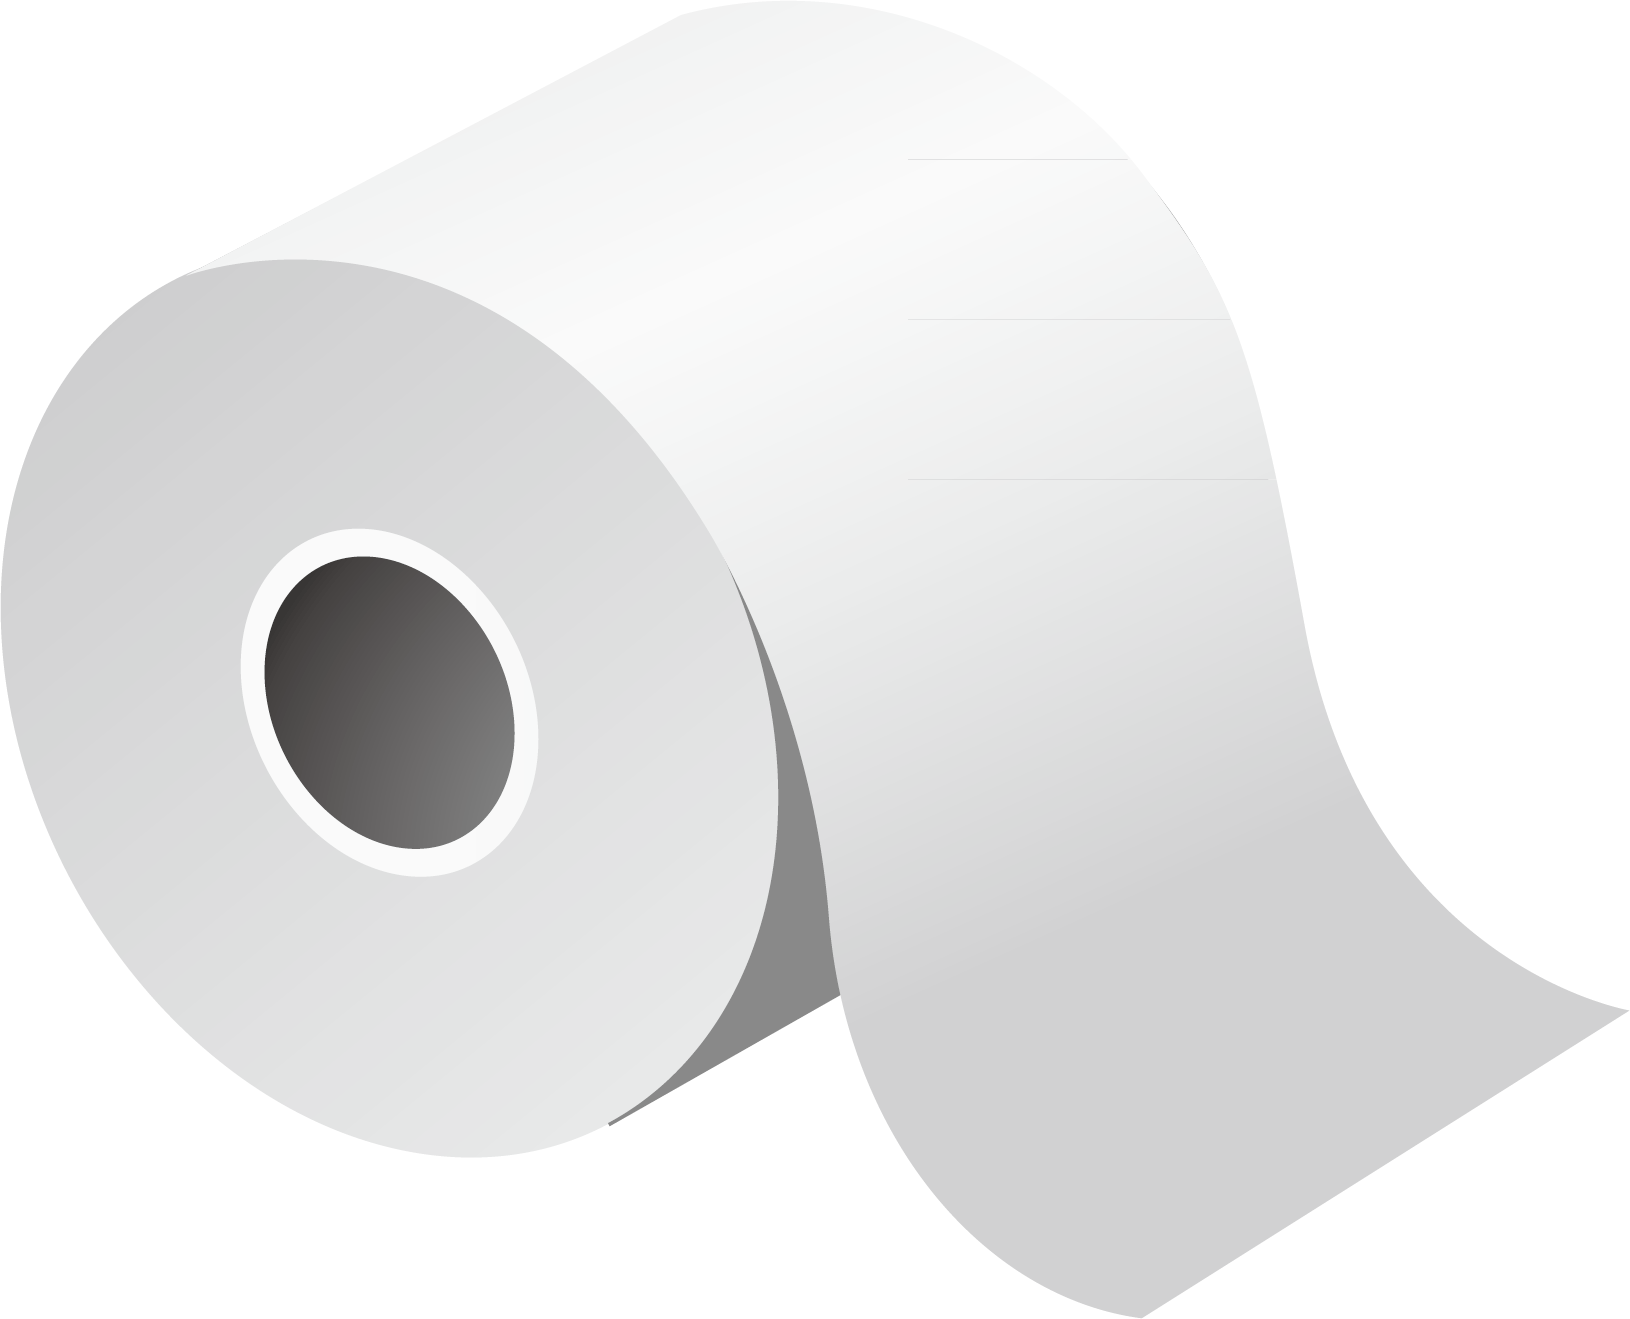 Papier toilette PNG HD Image